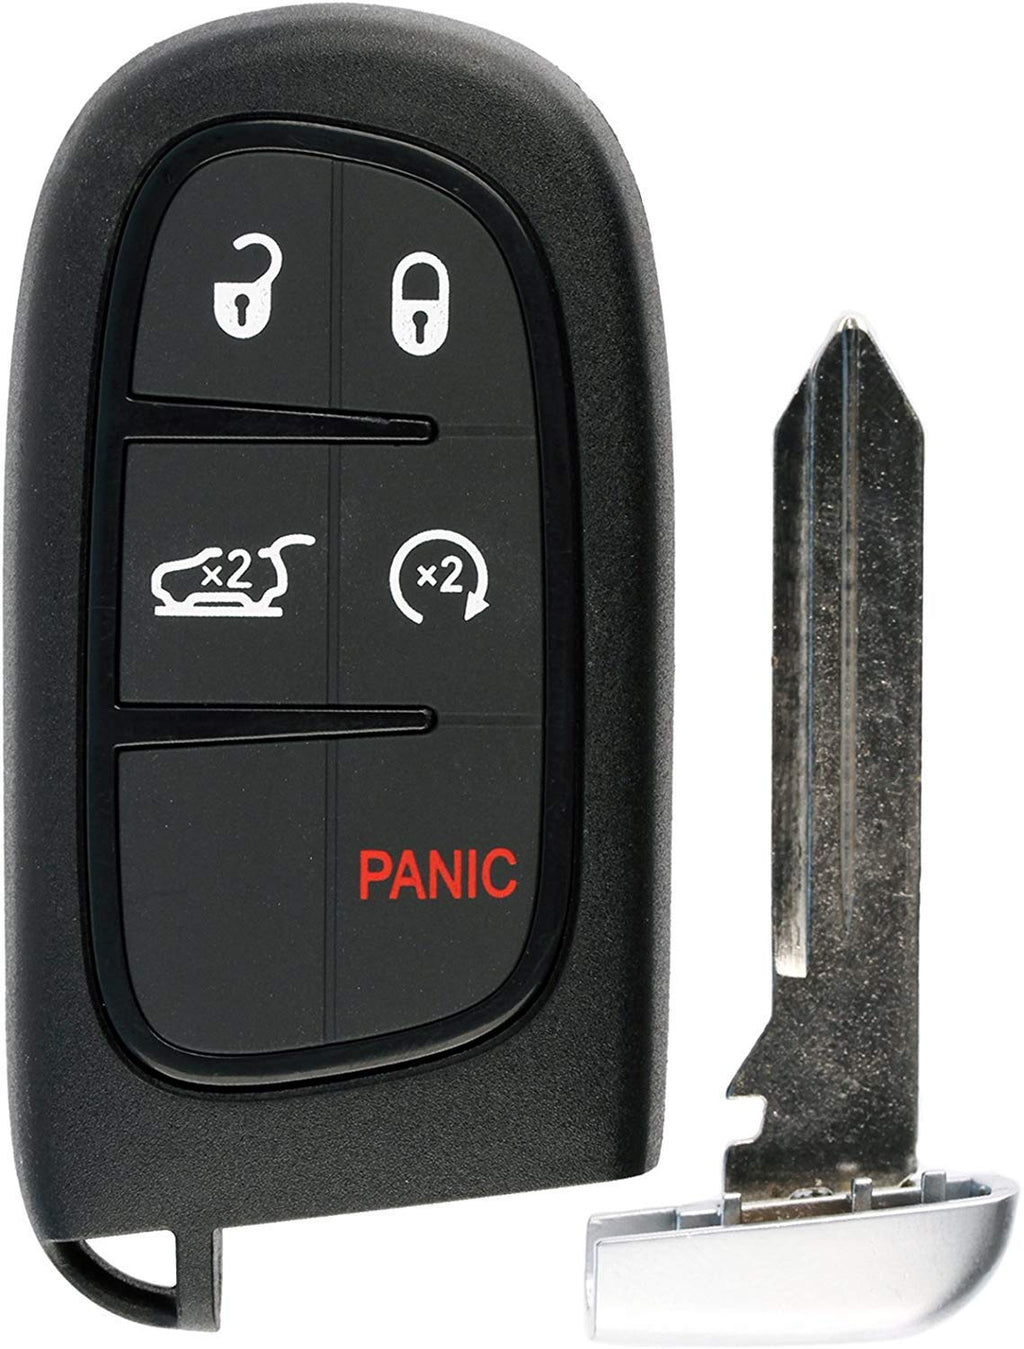  [AUSTRALIA] - KeylessOption Keyless Remote Start Smart Car Key Fob for Jeep Cherokee 2014-2019, GQ4-54T 1x